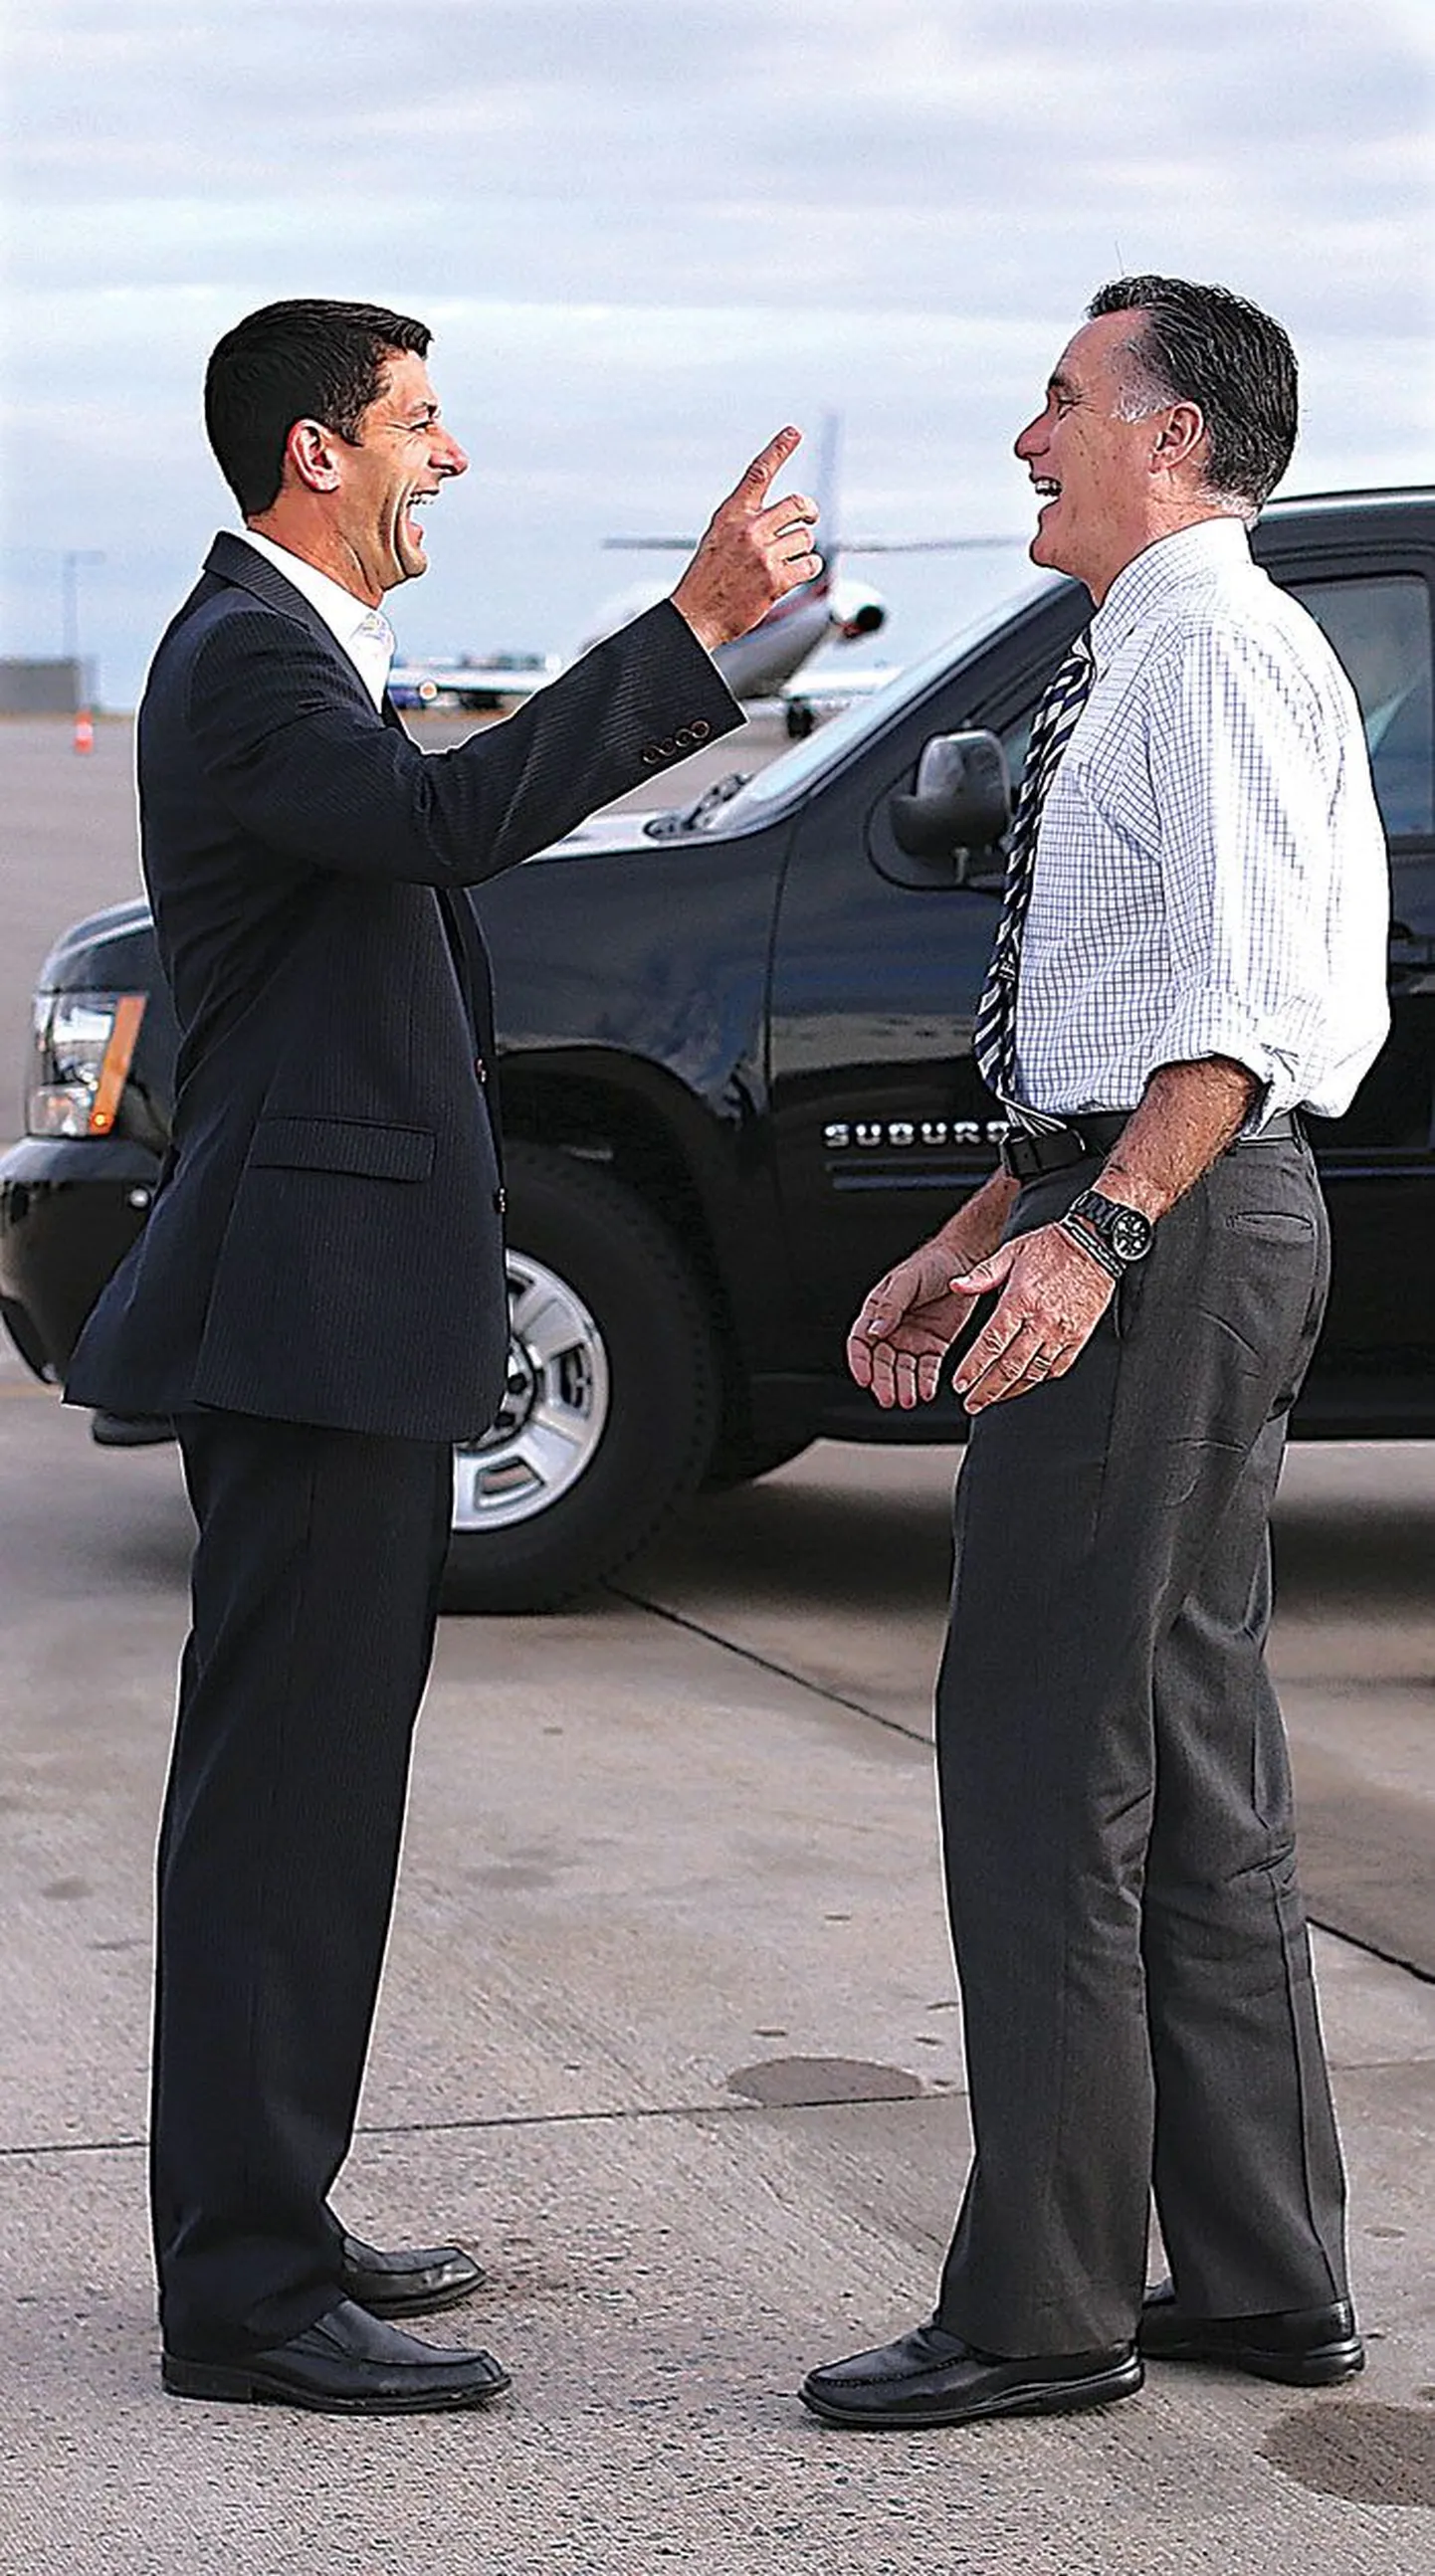 Vabariiklaste asepresidendikandidaat Paul Ryan ja presidendikandidaat Mitt Romney teel neid kampaaniaüritustele viivatele lennukitele.